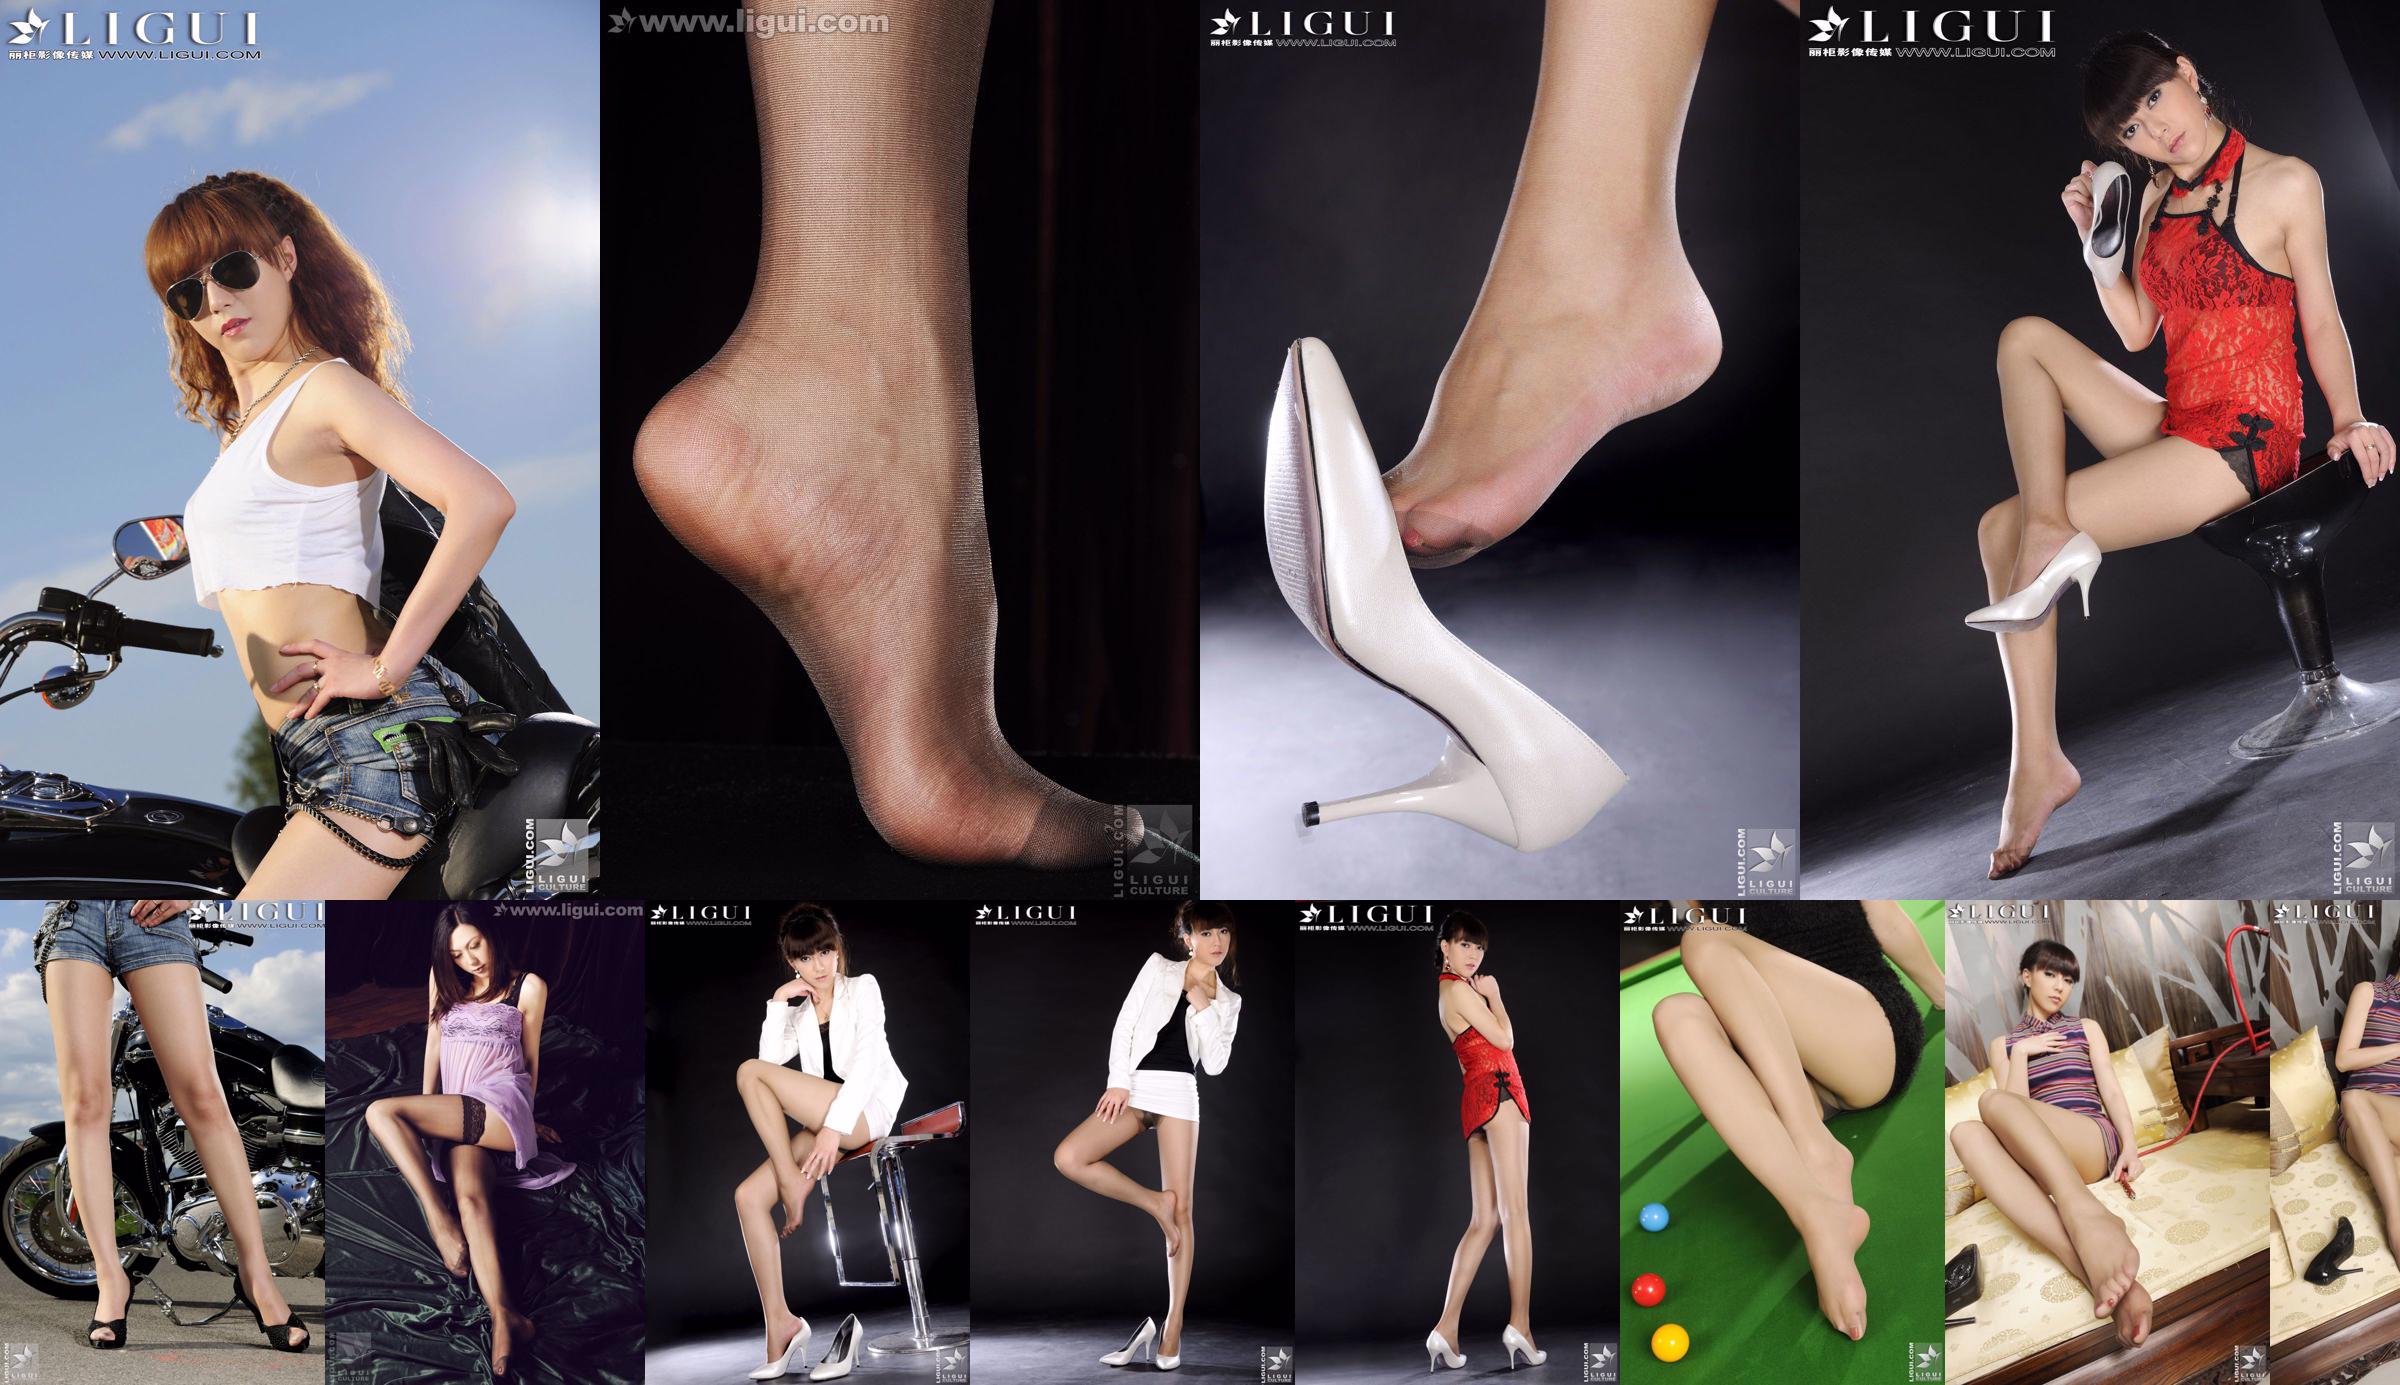 นางแบบเชอร์รี่ "ความโปรดปรานใหม่ของโลกแฟชั่น" [丽柜 LiGui] ภาพถ่ายขาสวยและเท้าหยก No.c99cbe หน้า 1